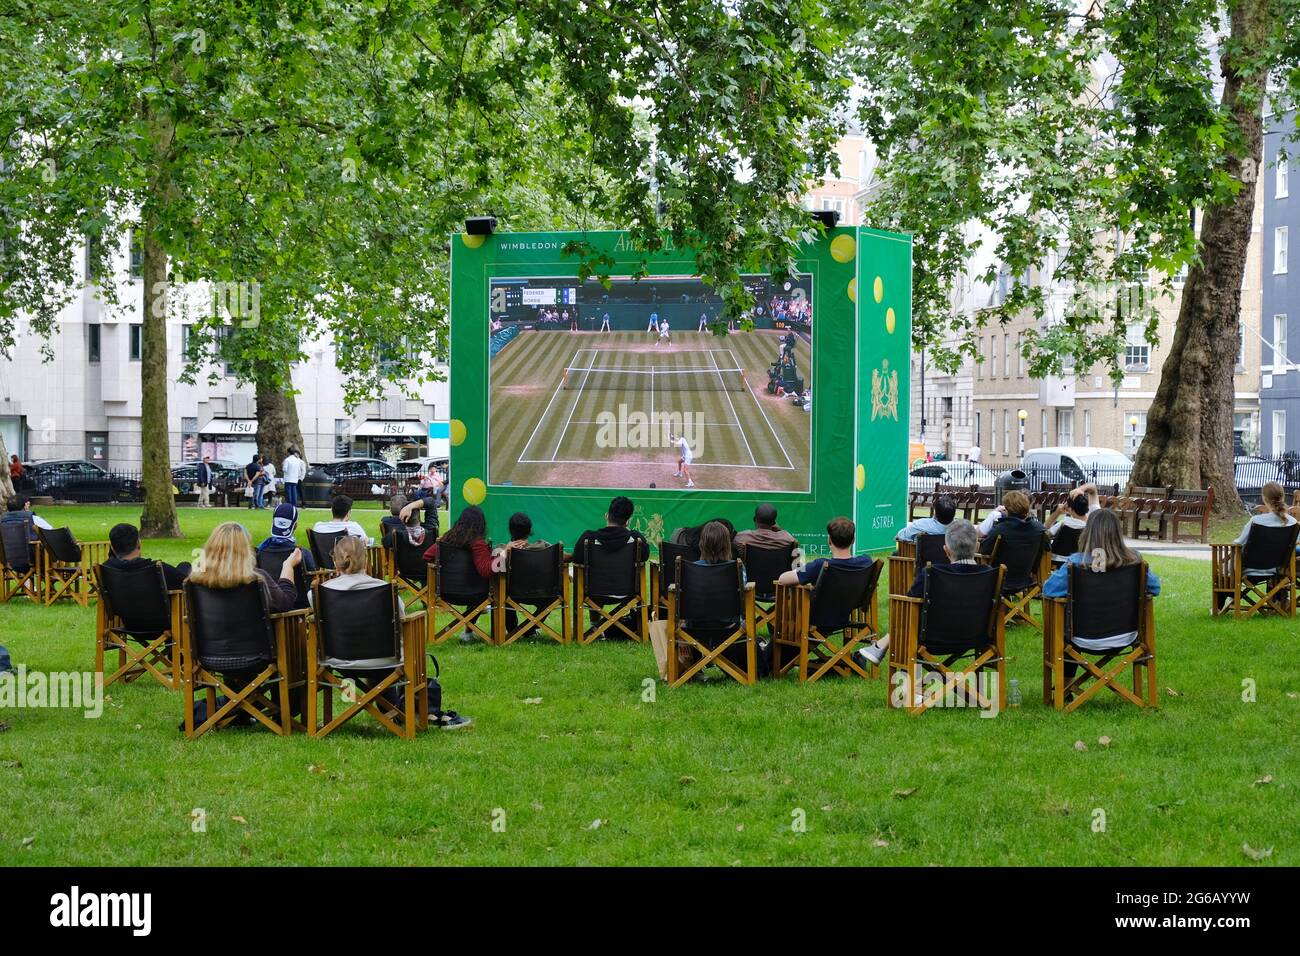 Les gens apprécient les projections publiques du tournoi de tennis de Wimbledon à Berkerley Square à Mayfair, l'un des nombreux écrans de plein air de la capitale Banque D'Images